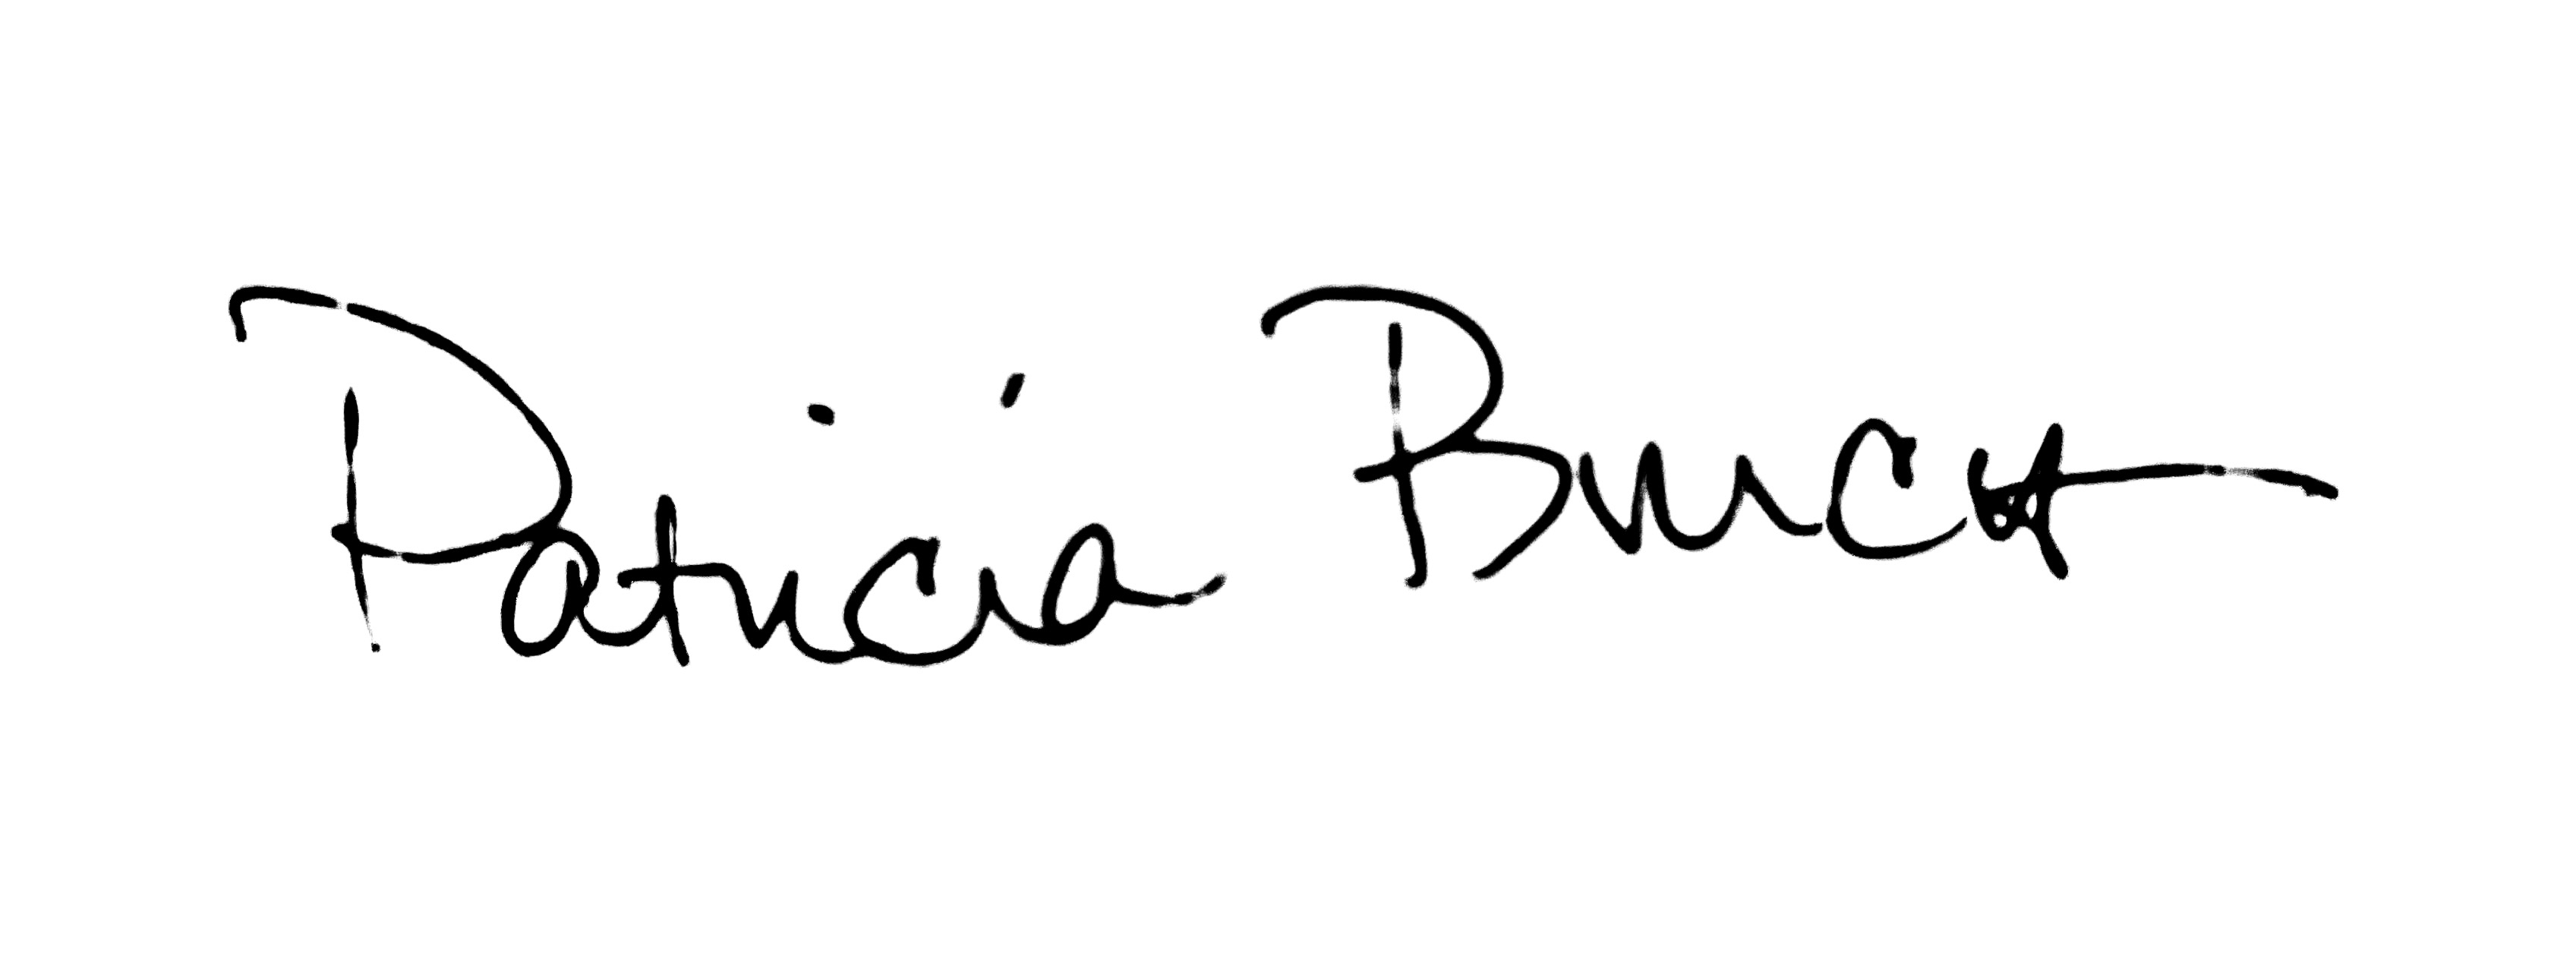 Patricia Burch sig